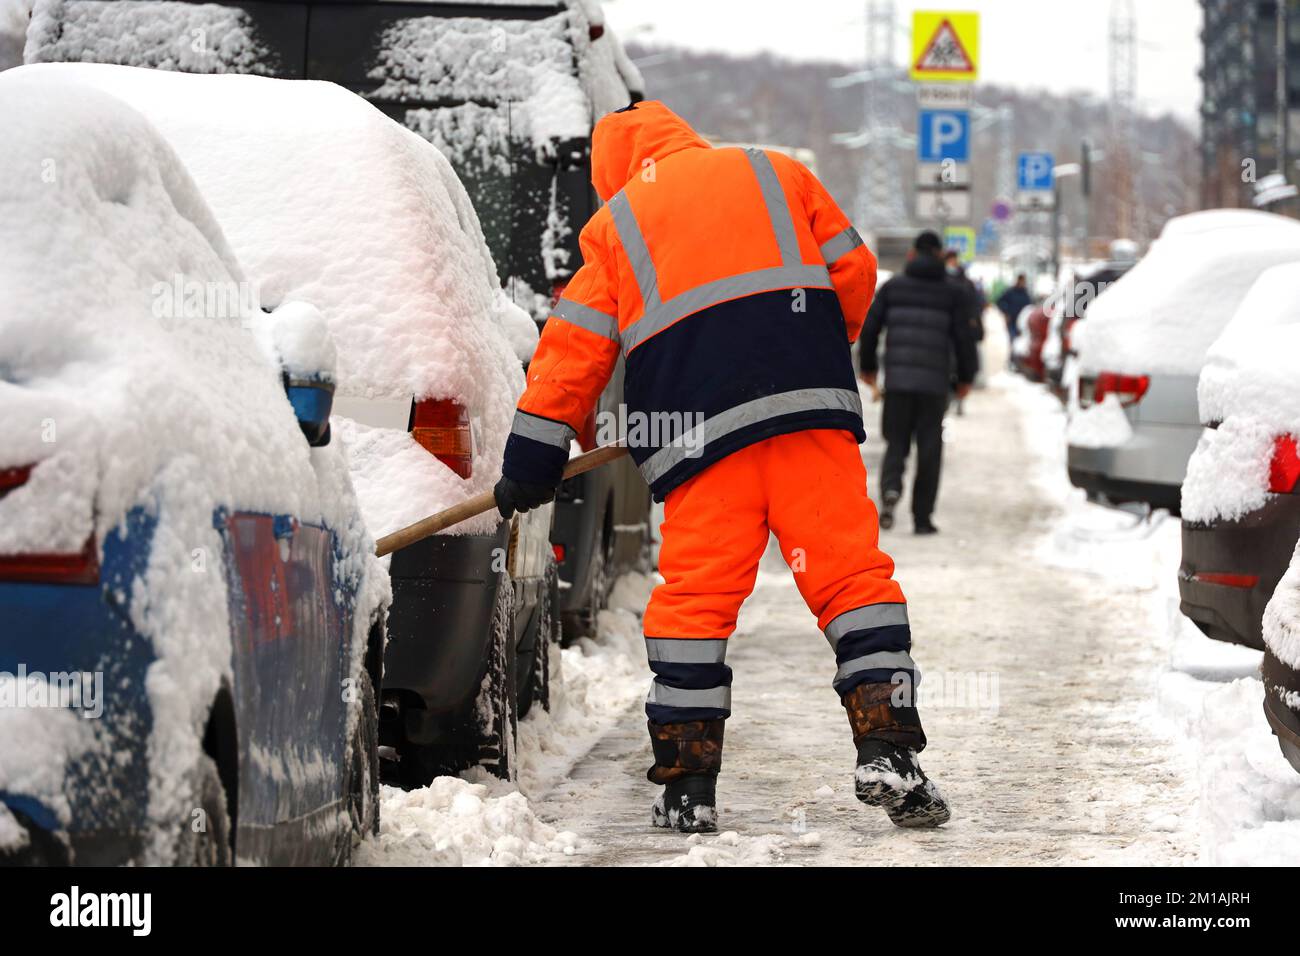 Homme ouvrier en uniforme orange avec une pelle nettoyant la rue près des voitures parking. Déneigement en ville d'hiver pendant la tempête de neige Banque D'Images